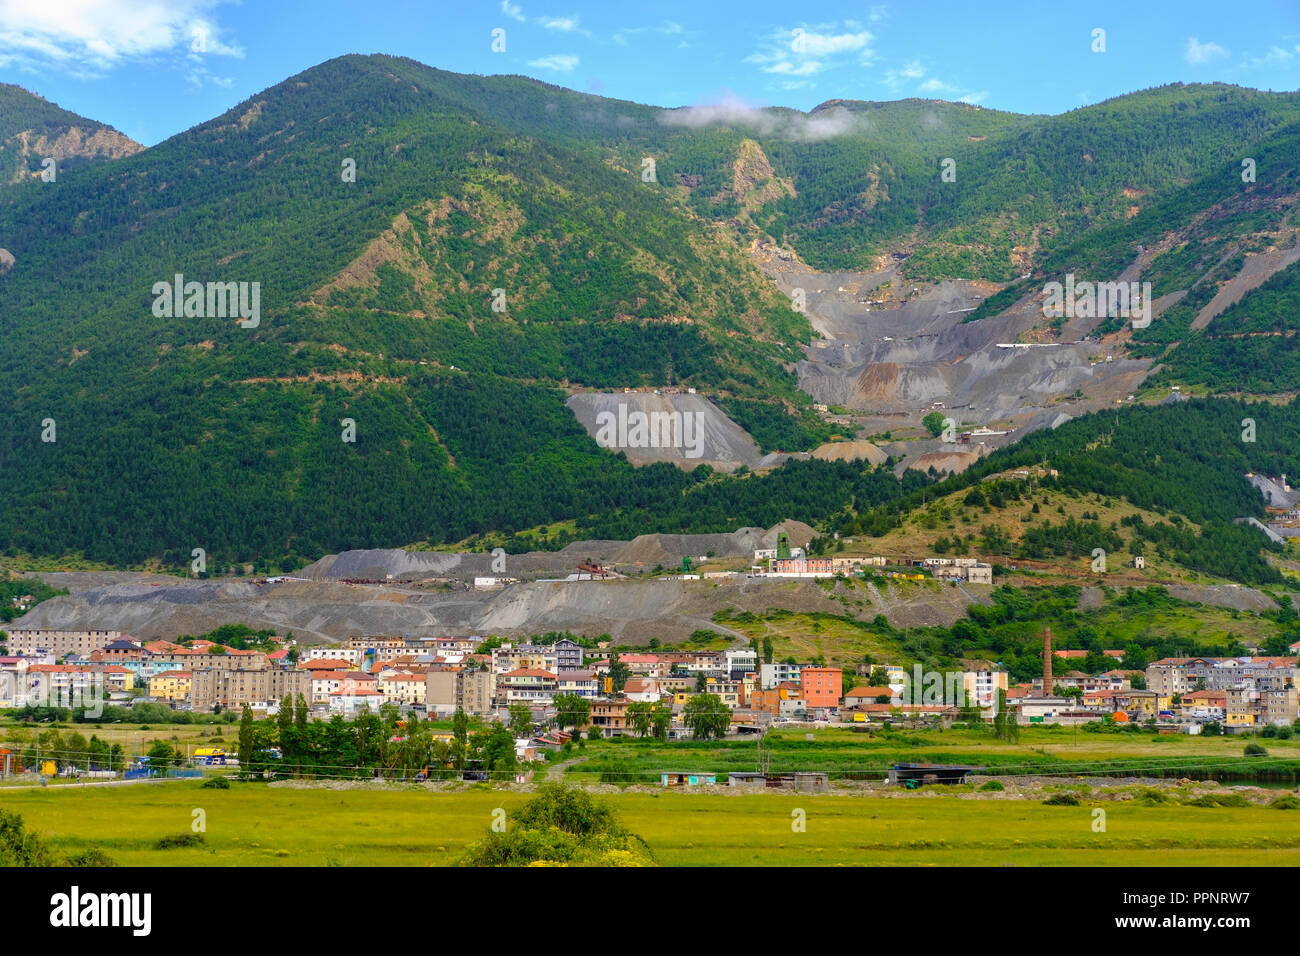 Chrome Mine, Bulqiza, Bulqizë, Qark Dibra, Albania Stock Photo